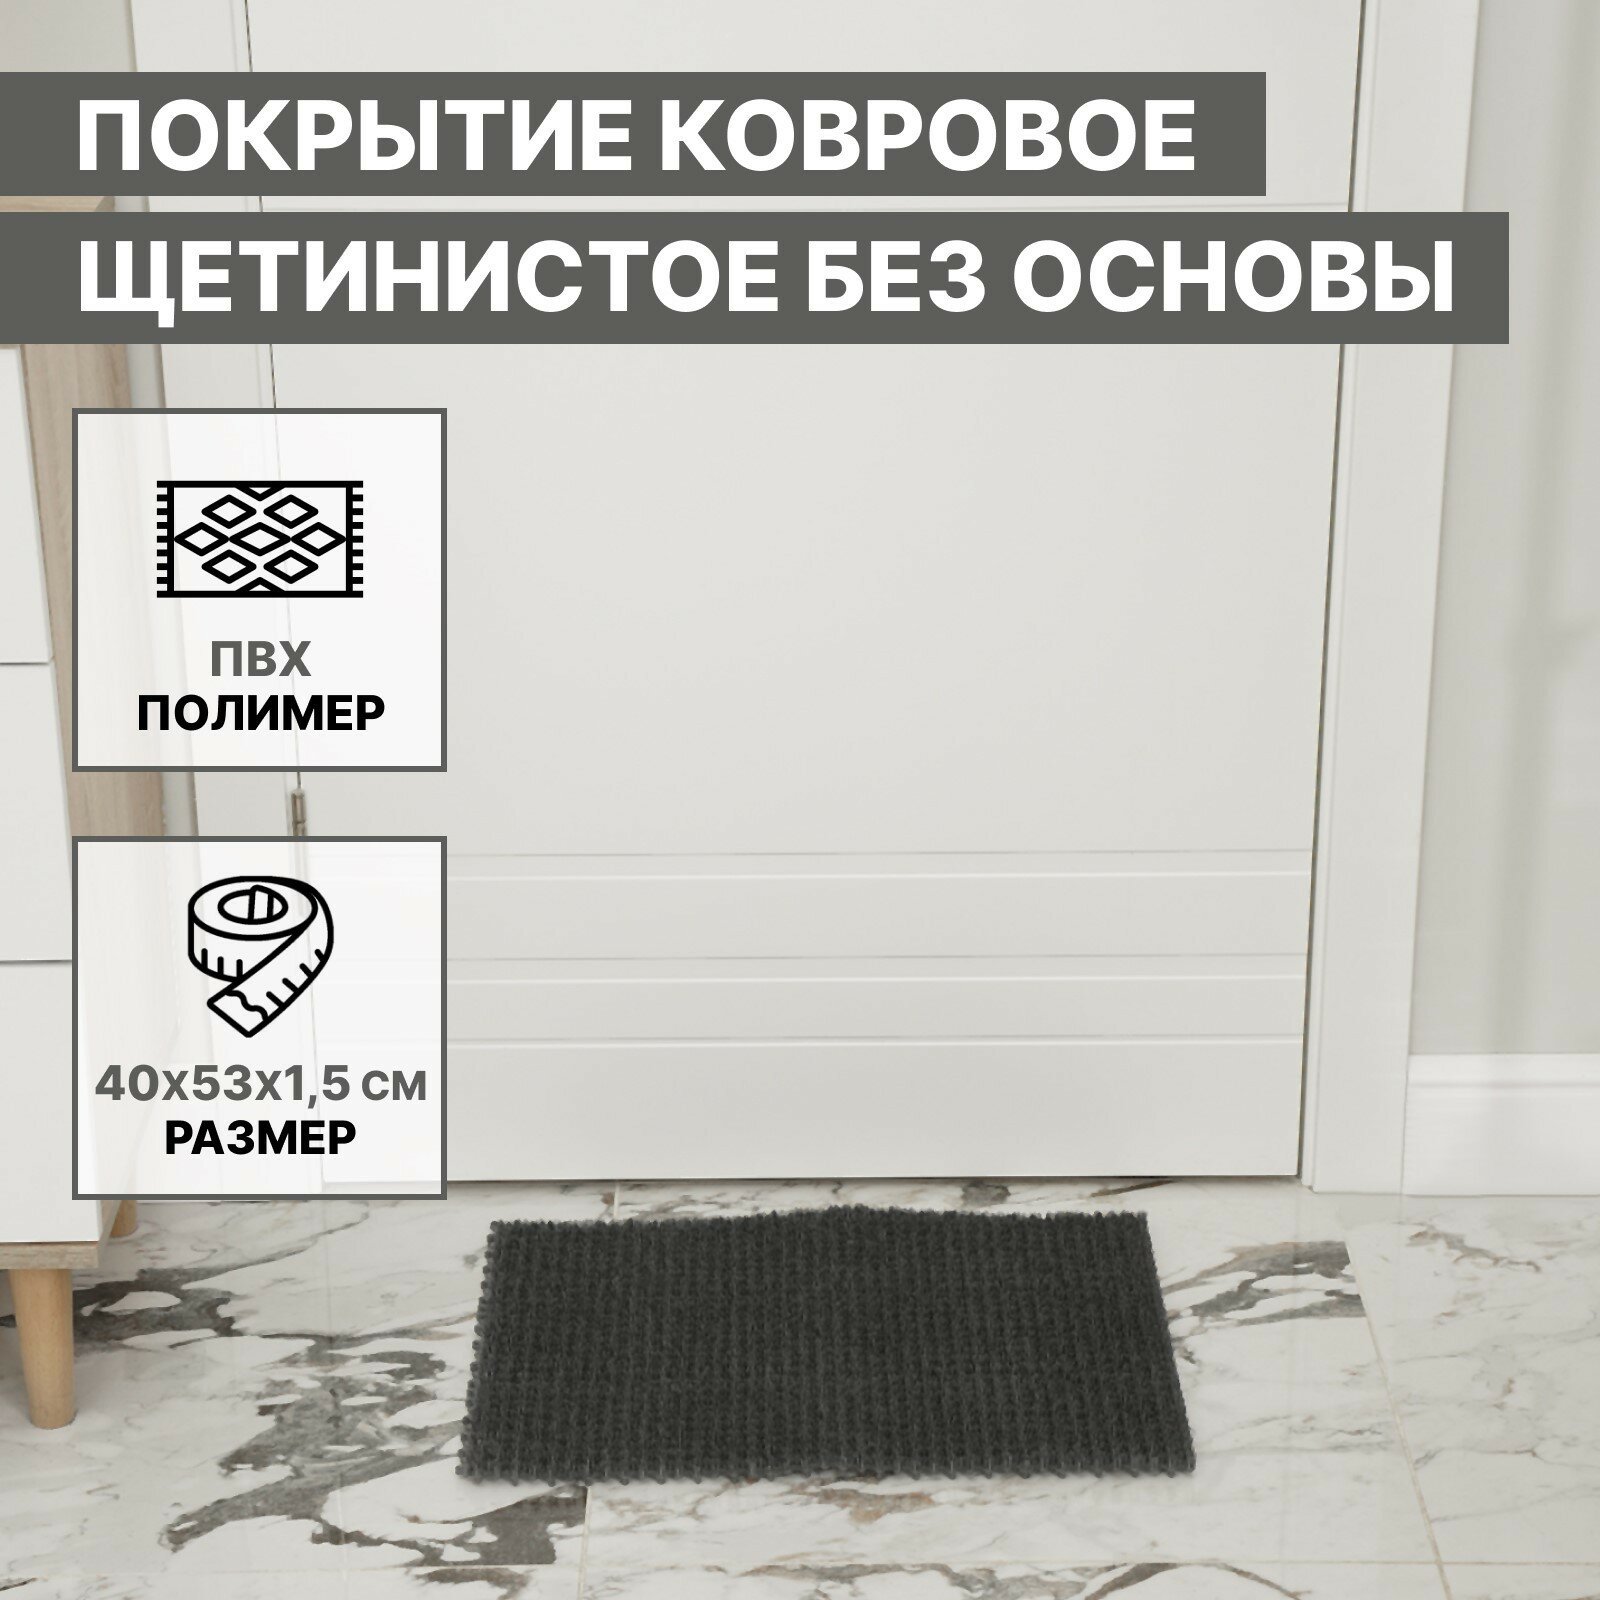 Покрытие ковровое щетинистое без основы «Травка», 40×53 см, цвет серый - фотография № 1